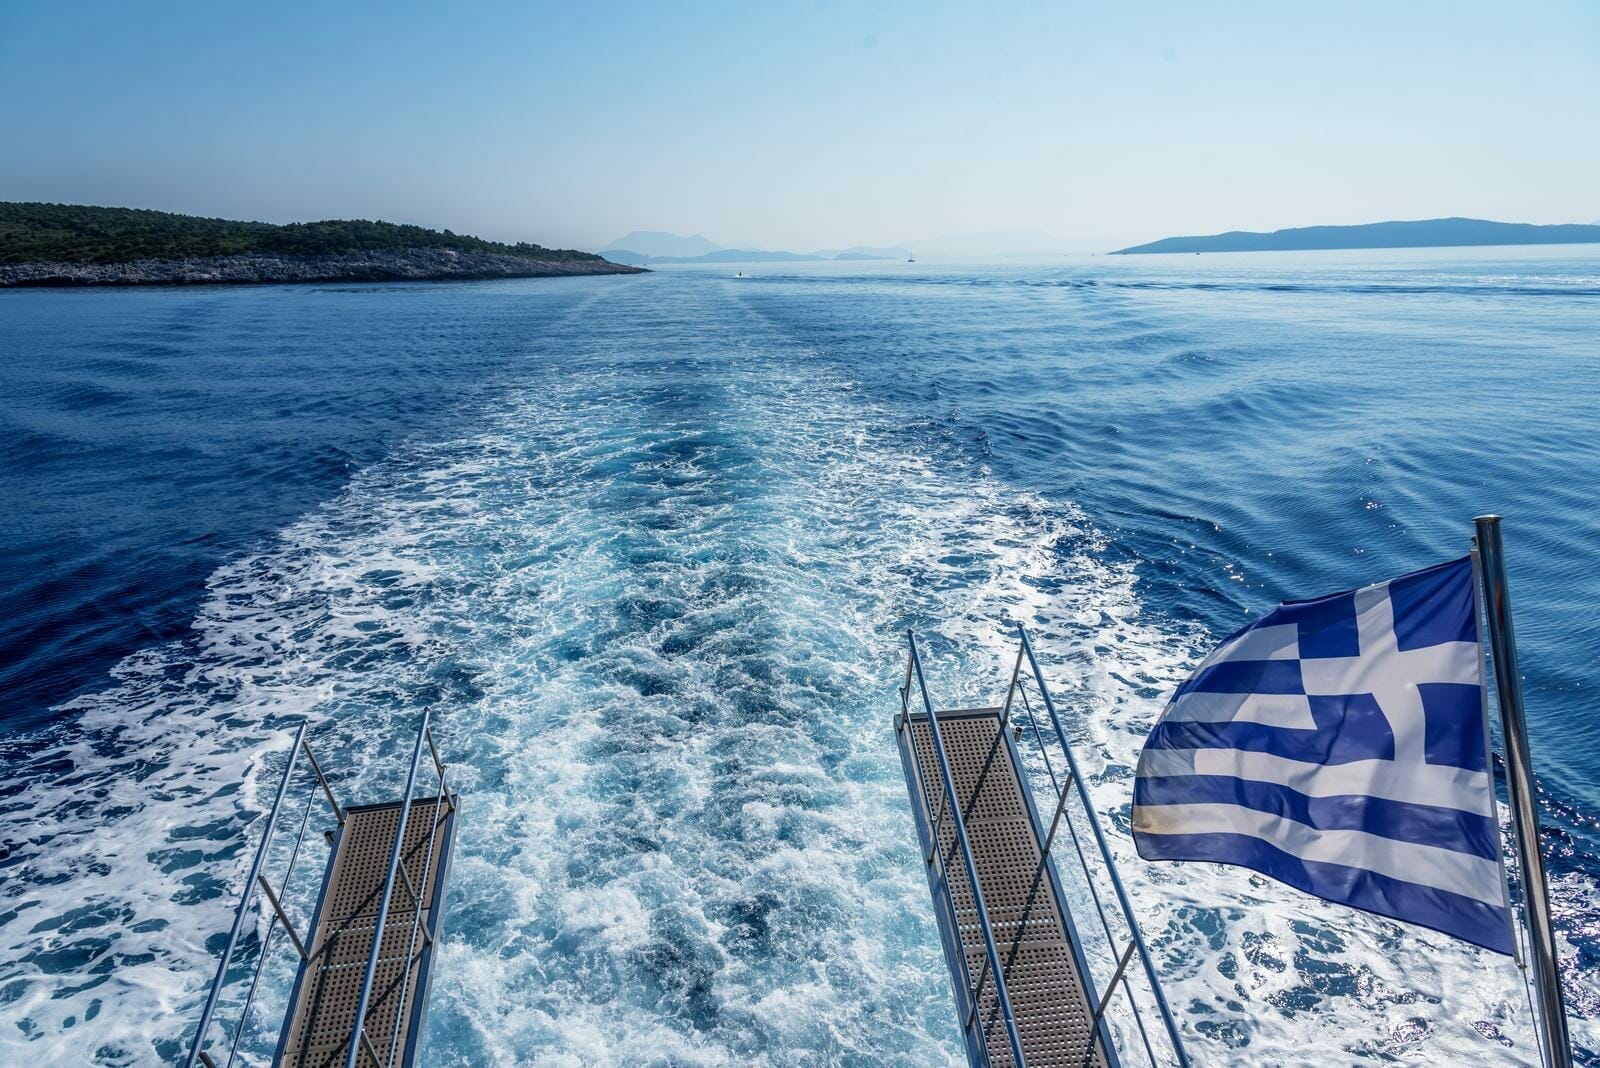 Lire la suite à propos de l’article Les bonnes raisons de faire une croisière en Méditerranée